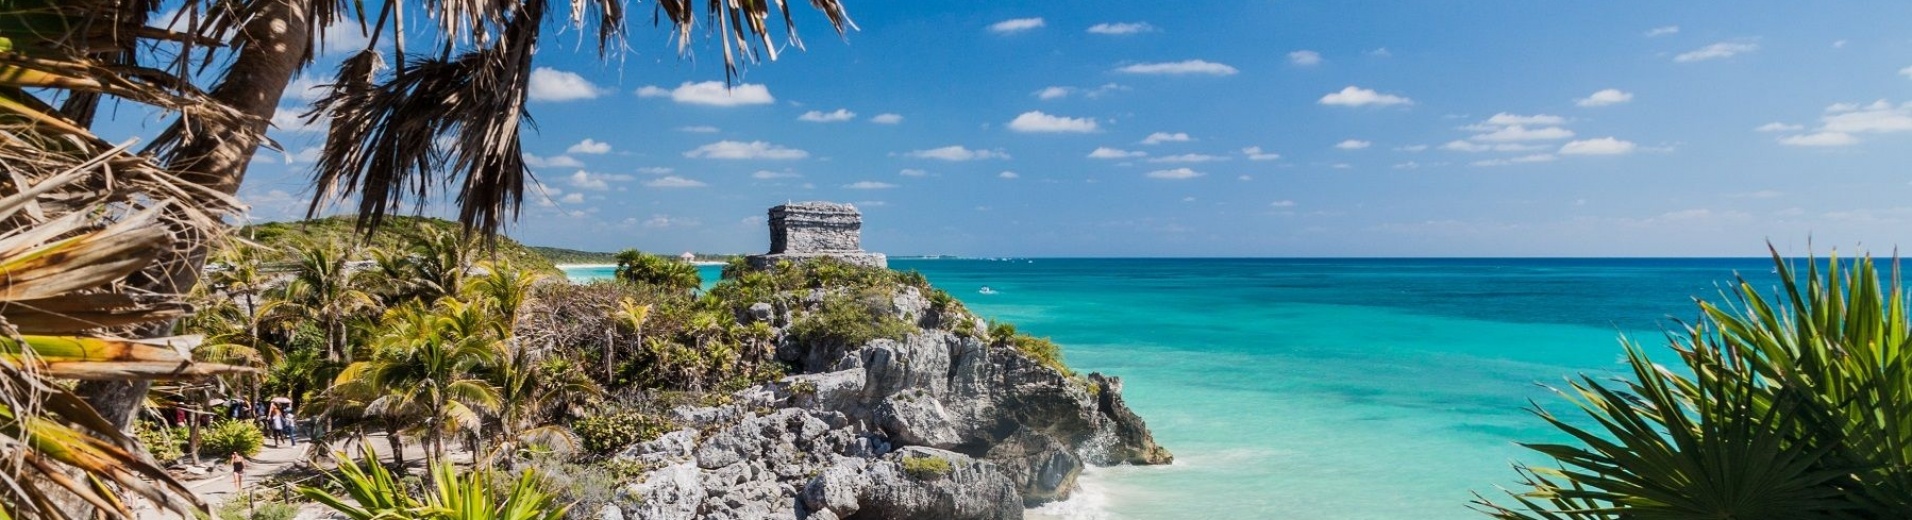 Mexique, Tulum, plages paradisiaques des Caraïbes, cité maya